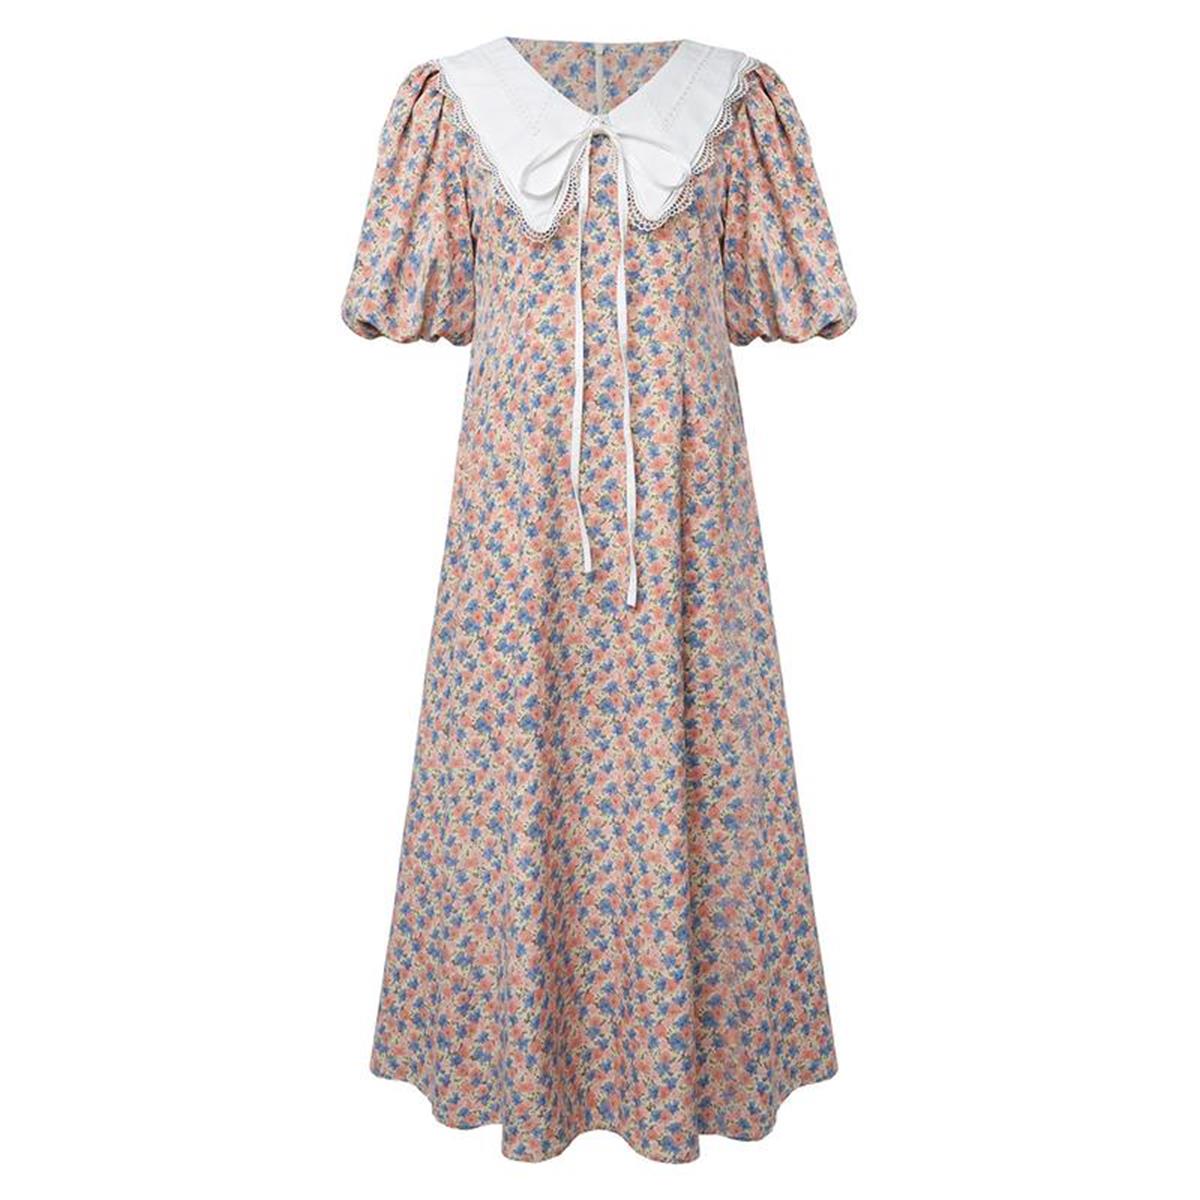 Платье в цветочек с белым воротничком LILIUM — купить в интернет-магазине lio